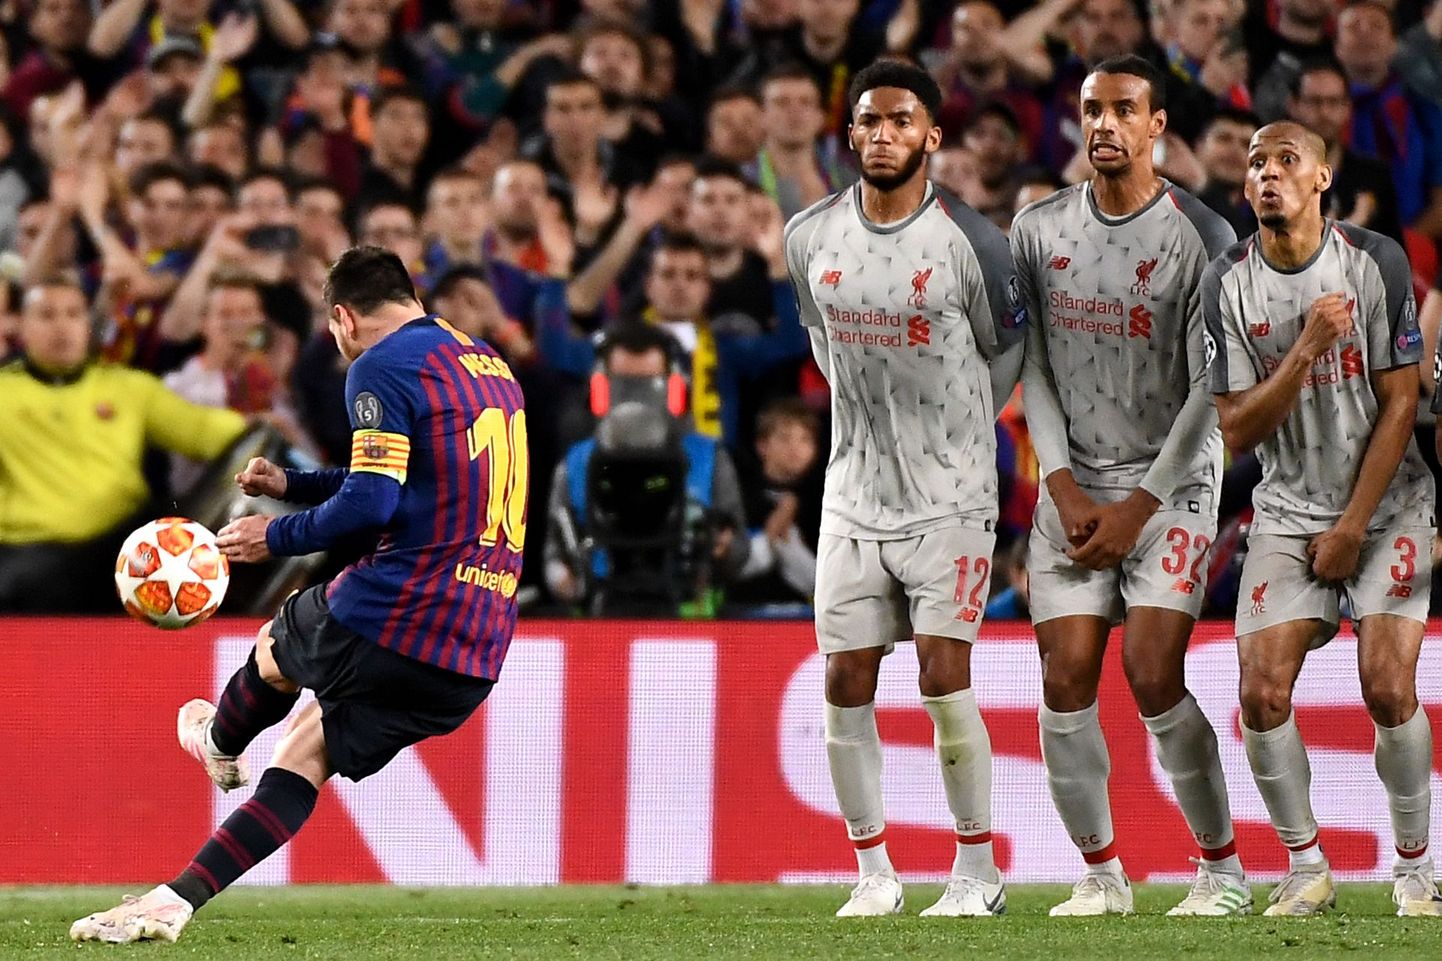 Barcelona argentiinlasest superstaar Lionel Messi vabalöökidest küll kõvasti skoori teinud,  kuid ühes mängus kolme väravat vabalöökidest lüüa pole veel õnnestunud.